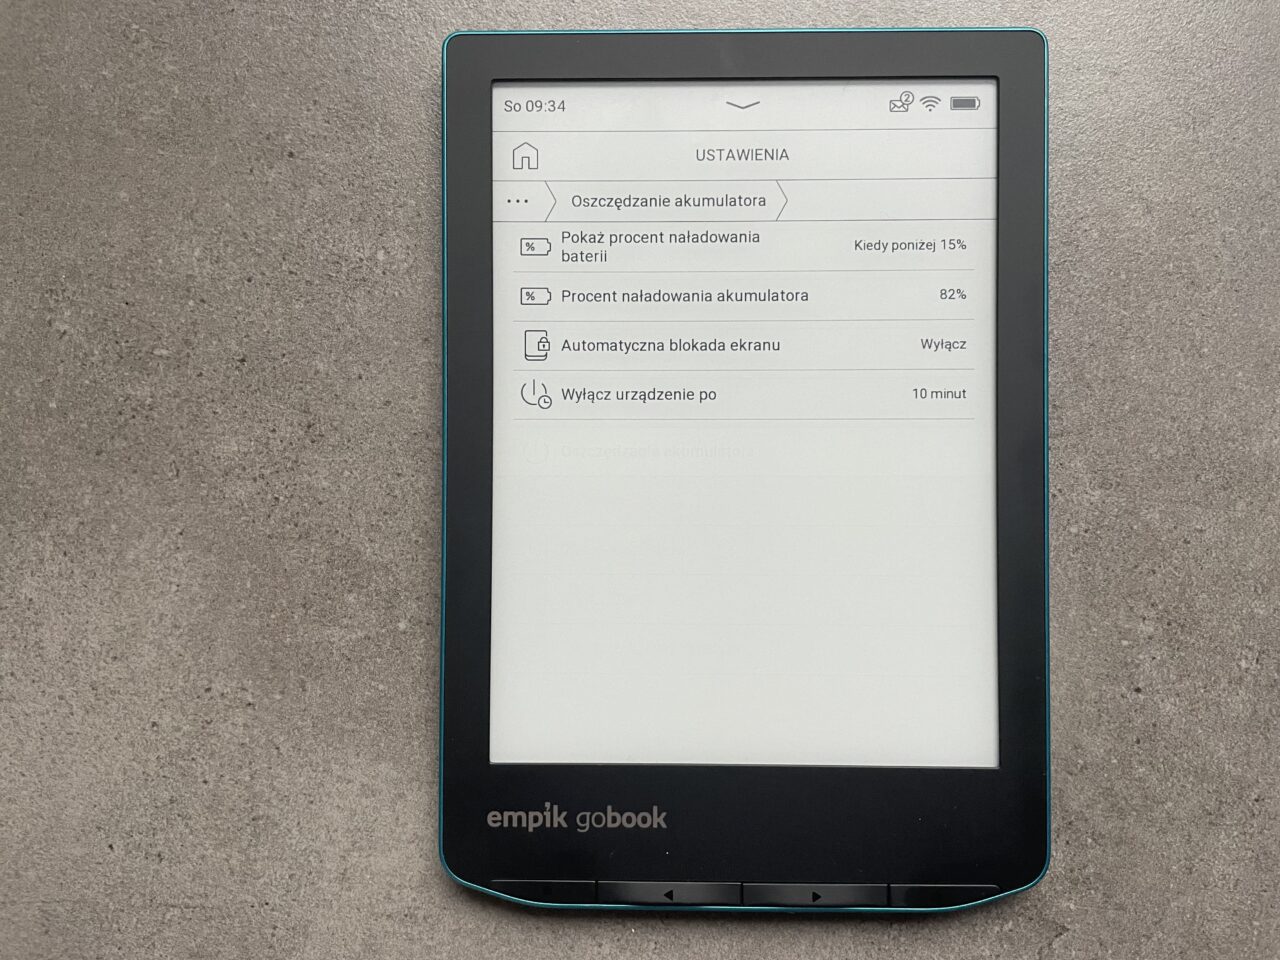 Czytnik e-booków "empik gobook" leżący na szarym blacie, z włączonym ekranem wyświetlającym menu ustawień baterii.